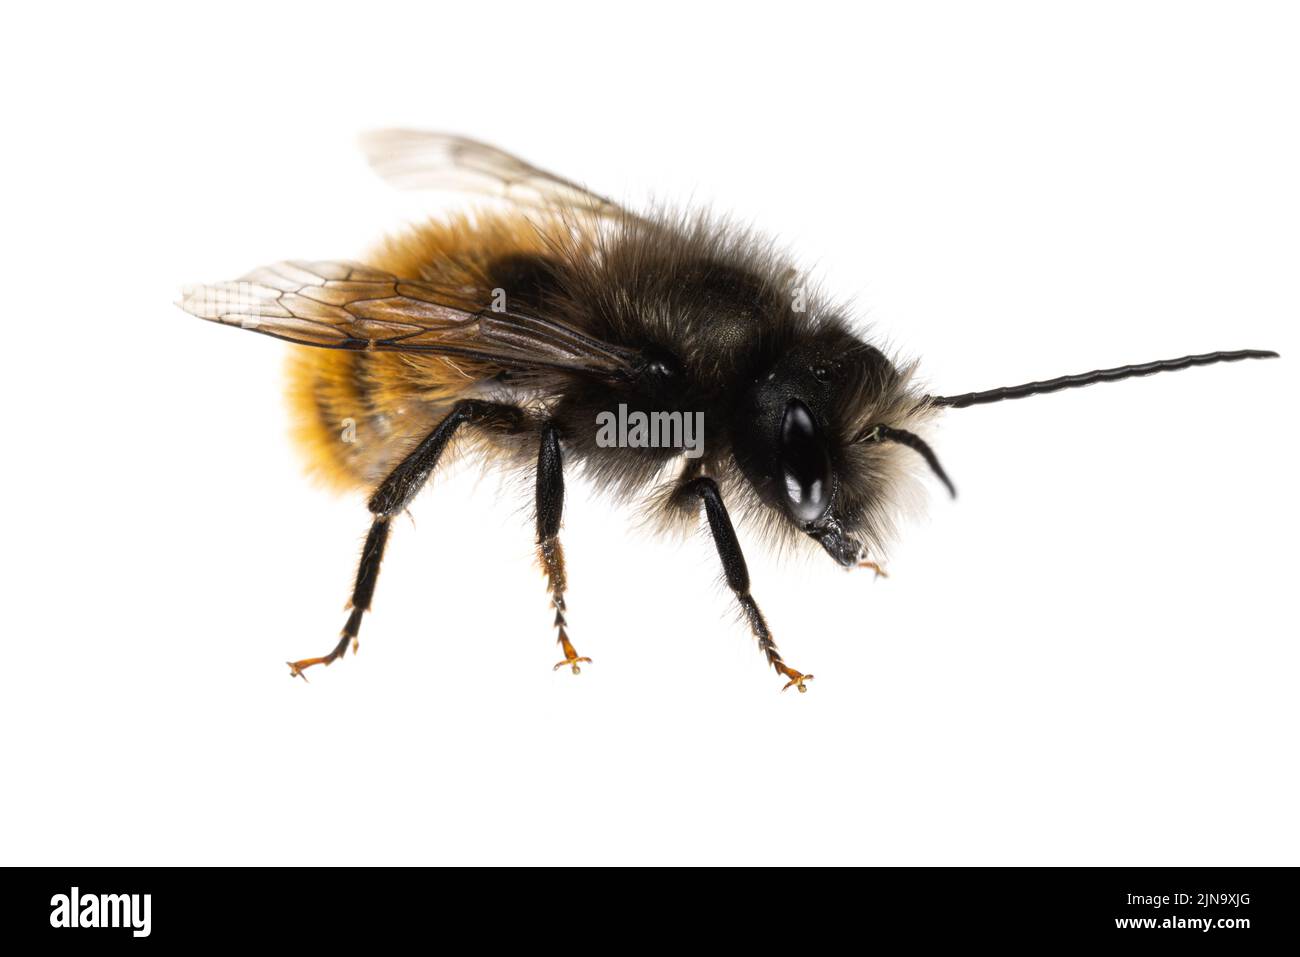 Insectes d'europe - abeilles: Macro de l'abeille mâle Osmia cornuta Orchard européen (gehörnte Mauerbiene allemand) isolé sur fond blanc vue latérale Banque D'Images